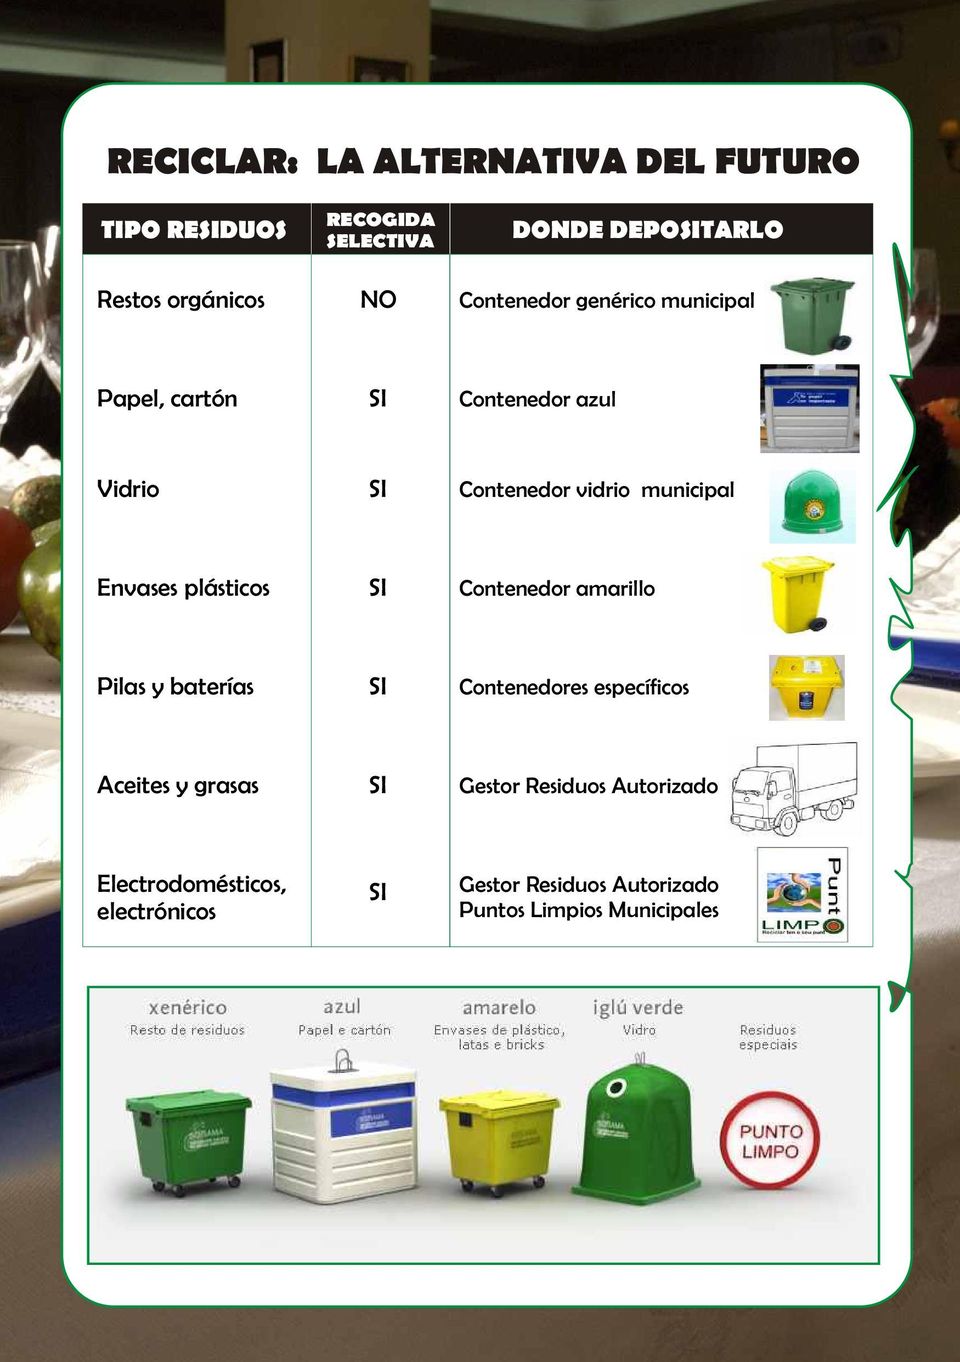 municipal Envases plásticos Contenedor amarillo Pilas y baterías Contenedores específicos Aceites y